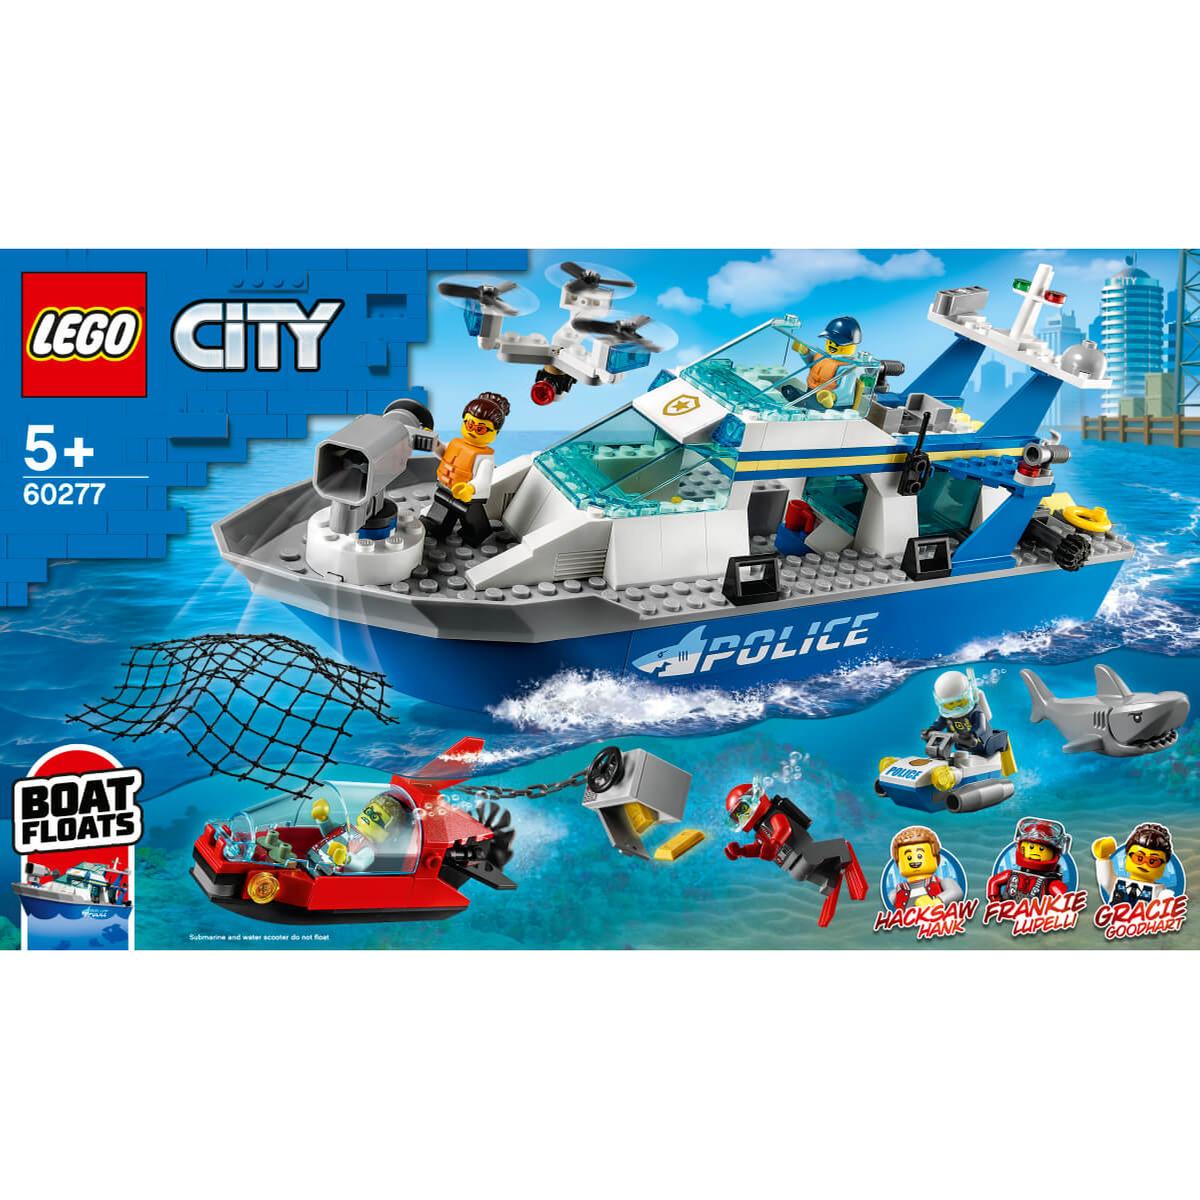 LEGO City - Barco patrulla de policía - 60277 | Lego City | Toys"R"Us España